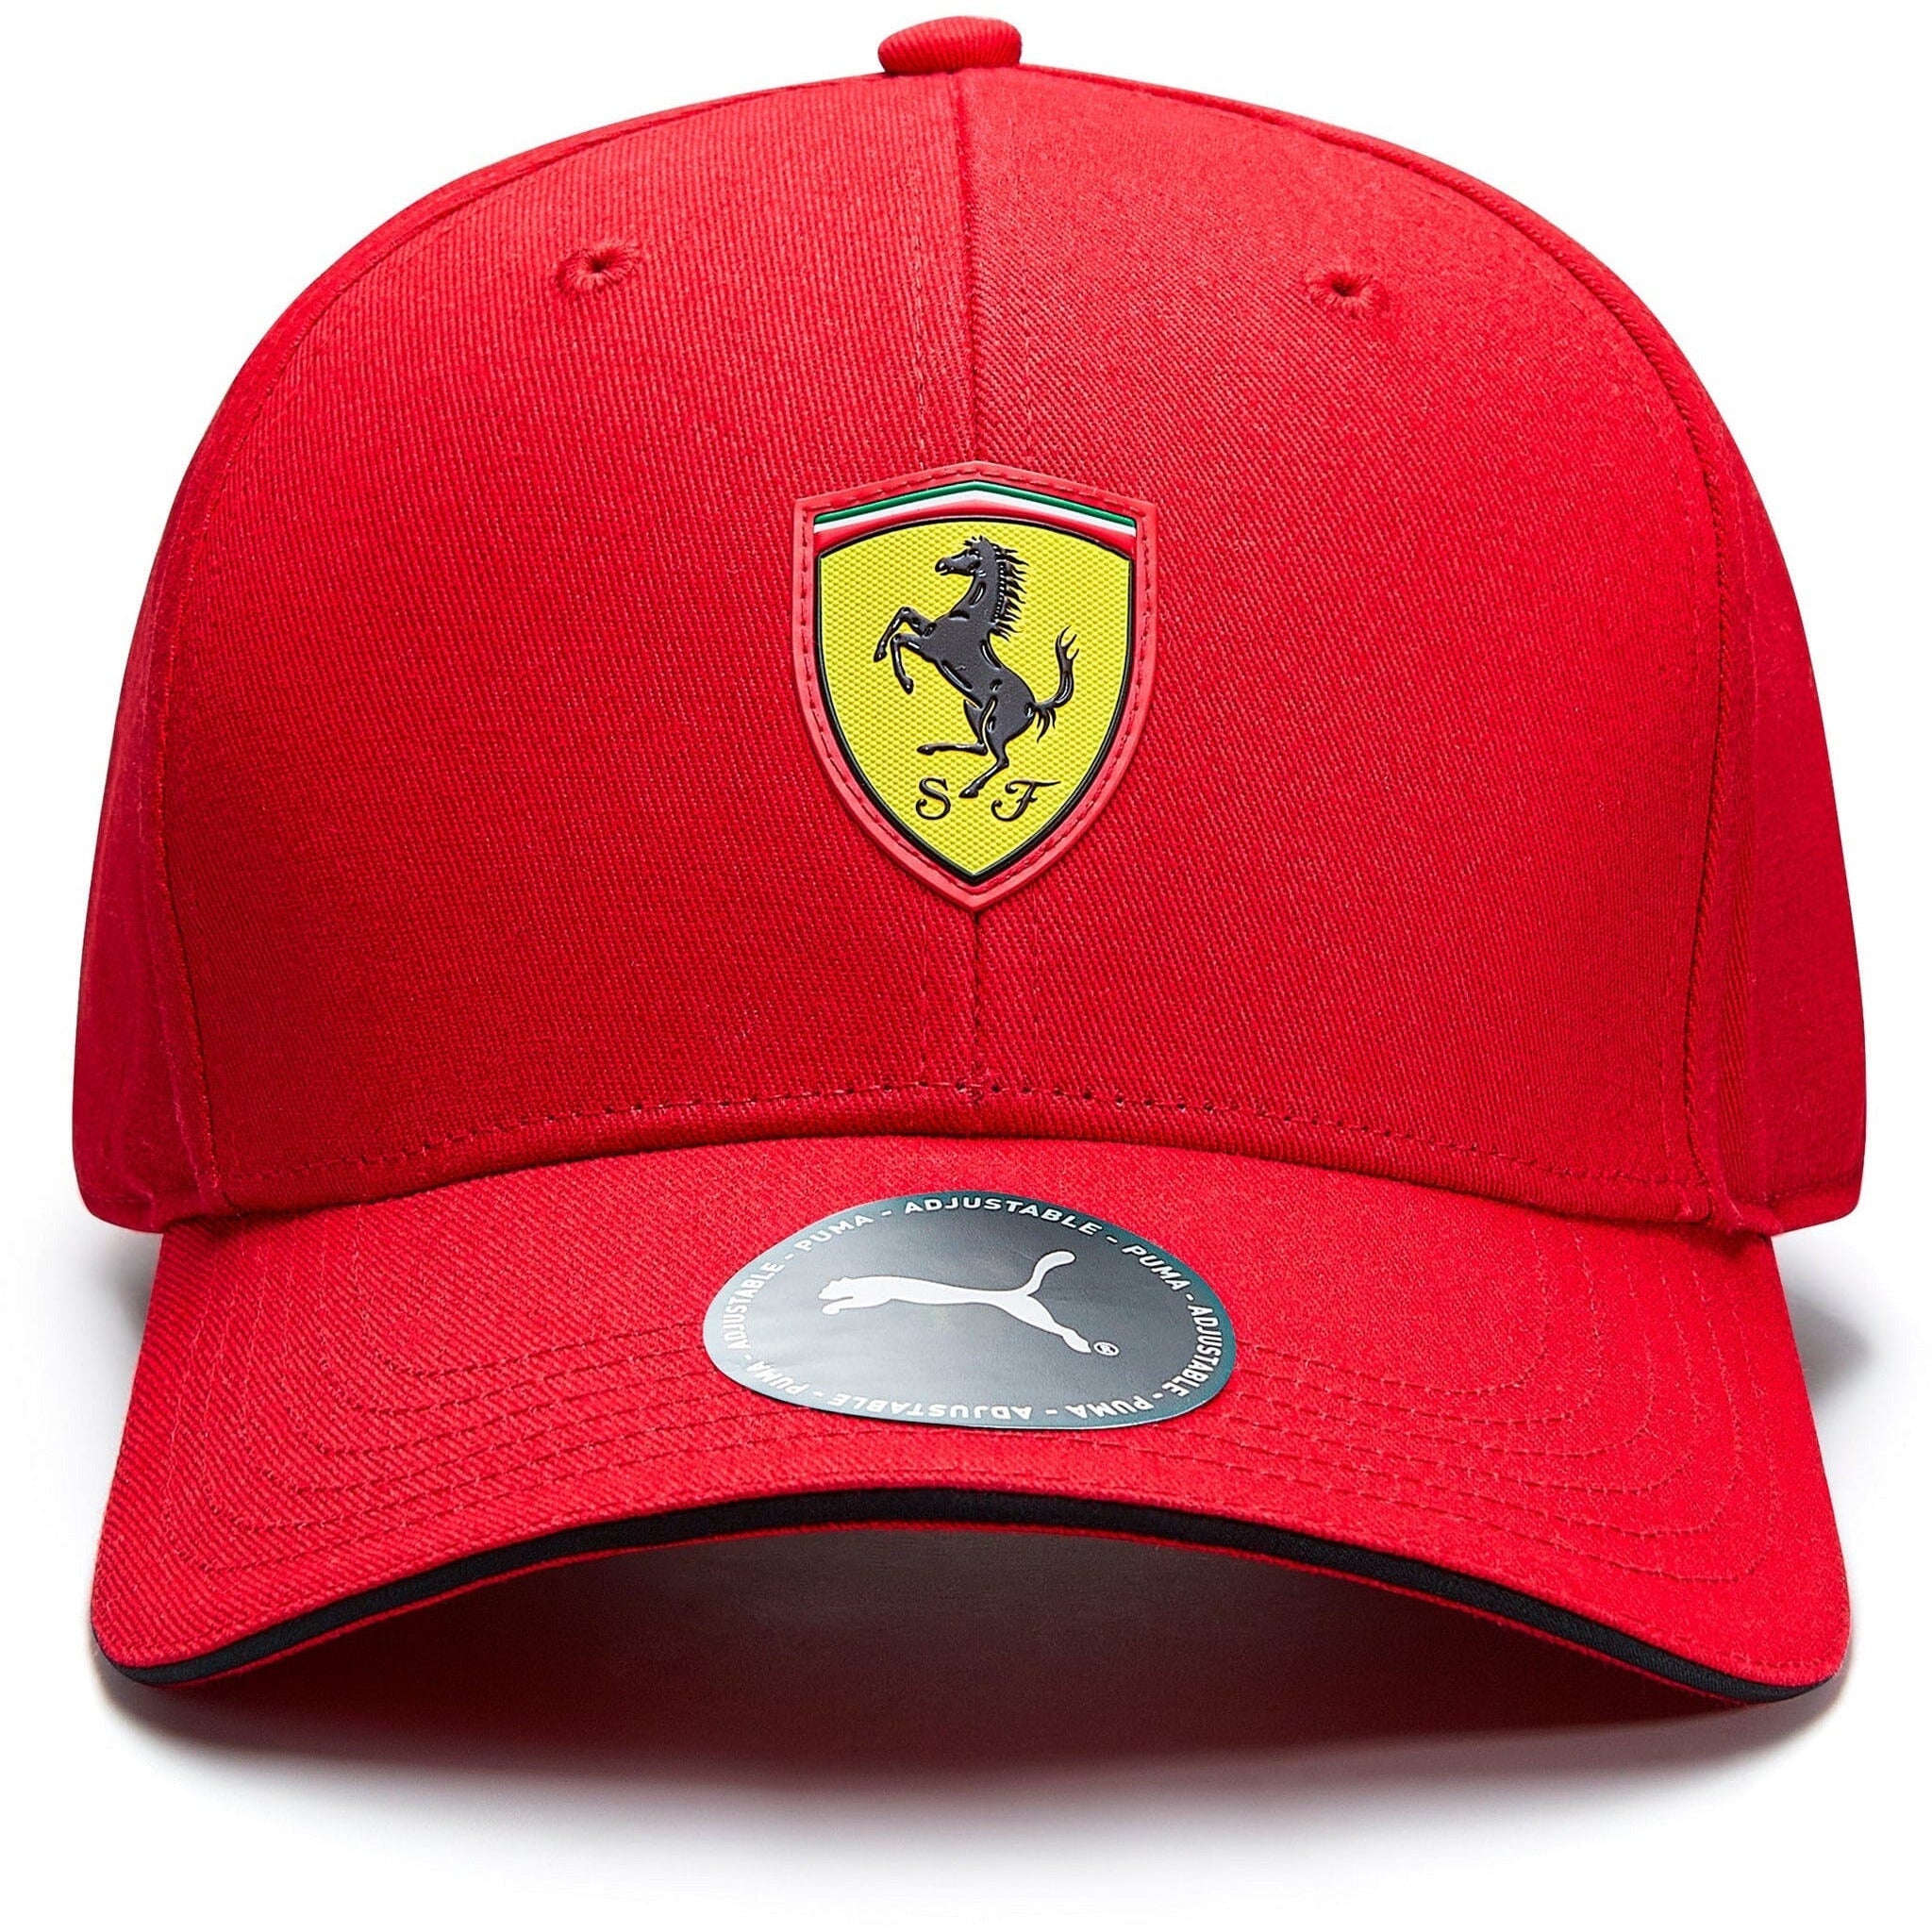 Scuderia Ferrari F1 Classic Hat - Red/Black